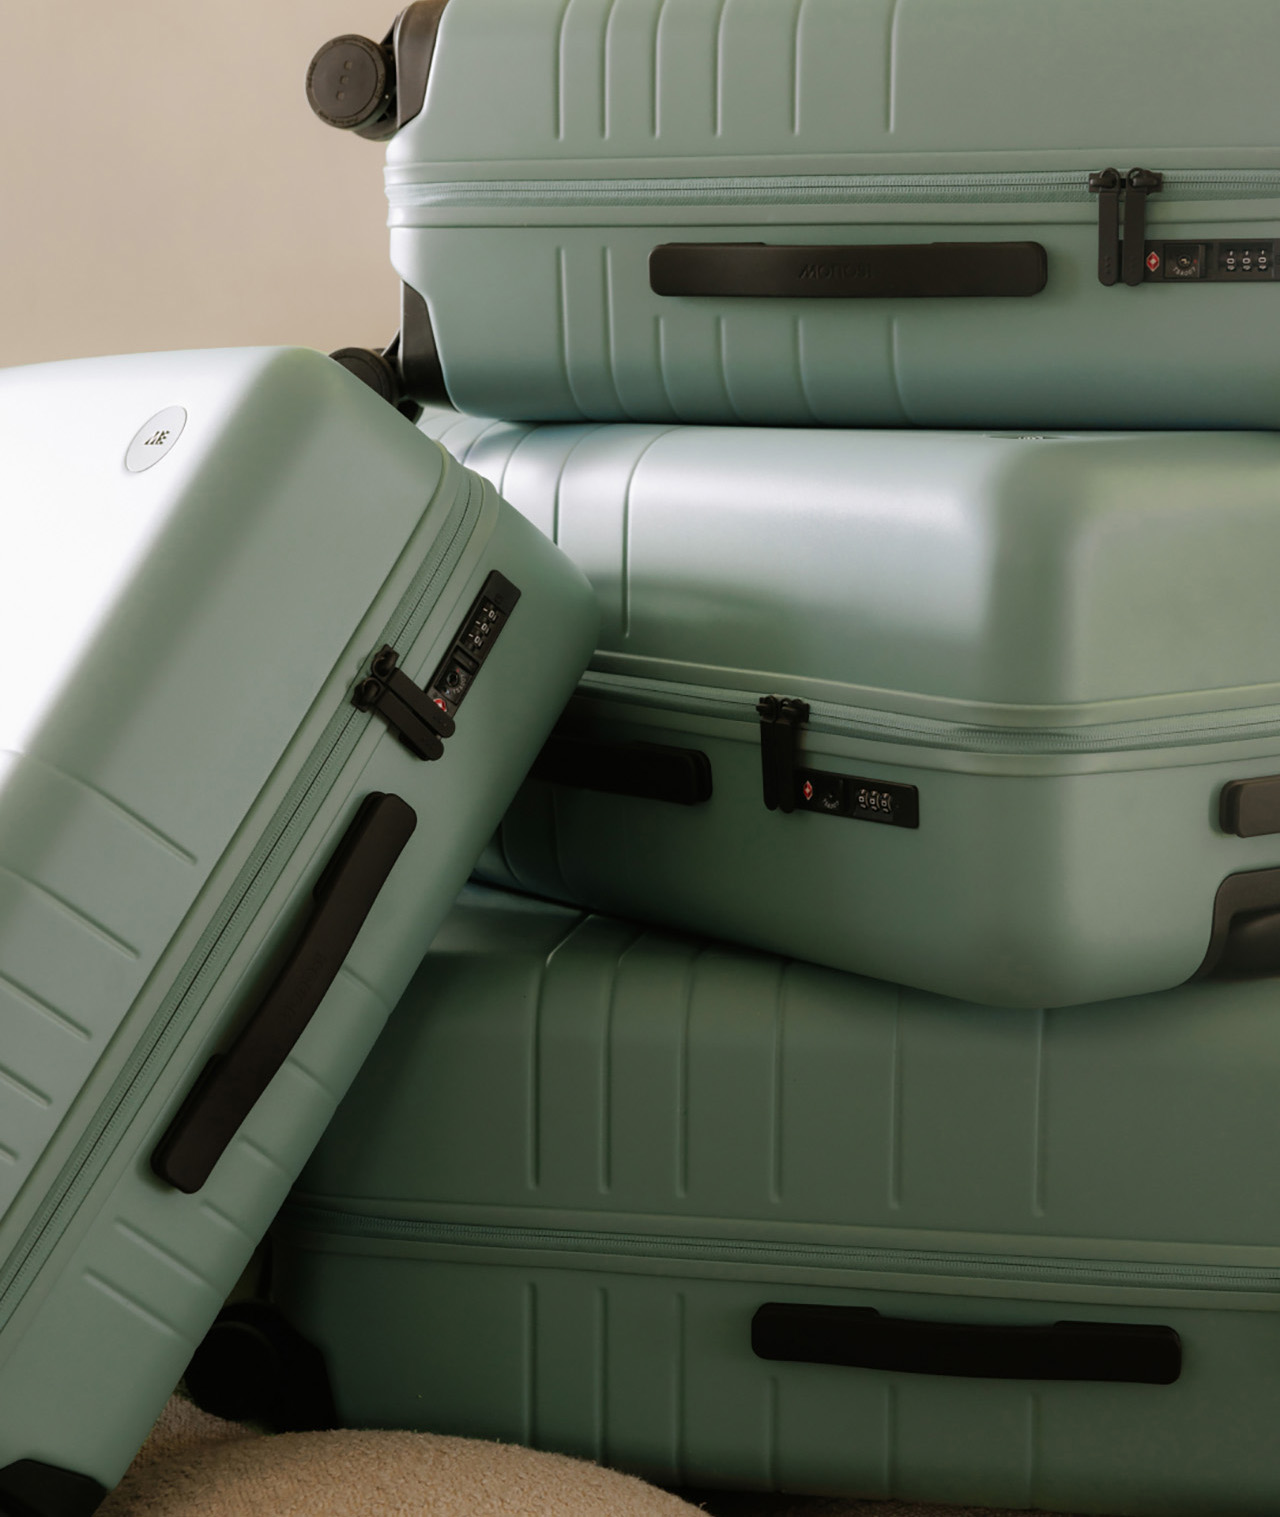 Vacuum Packed Suitcase - Yanko Design